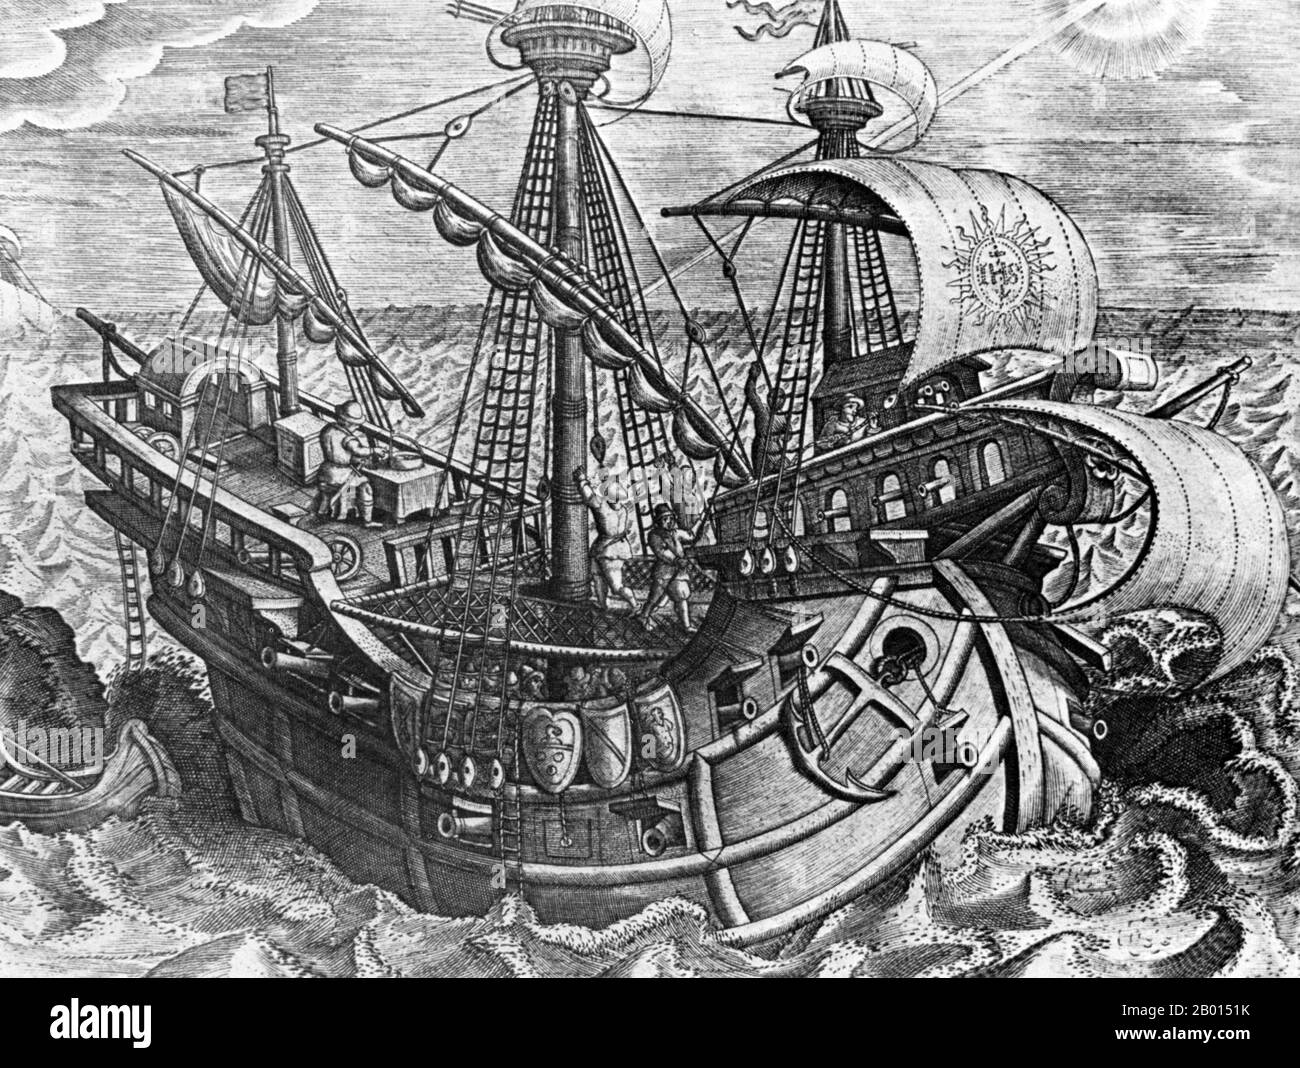 Espagne/Amériques: Un wagon espagnol sur une expédition Atlantique au début des années 1500, à la recherche d'un itinéraire vers le Pacifique. Notez le pilote sur le pont supérieur en prenant une vue avec un sextant. Gravure de Johannes Stradanus (1523-1605), c. 1600. Ferdinand Magellan, ou Fernão de Magalhães, (c. 1480–1521) était un explorateur portugais. Il est né à Sabrosa, dans le nord du Portugal, mais a obtenu plus tard la nationalité espagnole afin de servir le roi Charles Ier d'Espagne à la recherche d'une route vers l'ouest vers les îles «Sice» (îles Maluku modernes en Indonésie). Banque D'Images